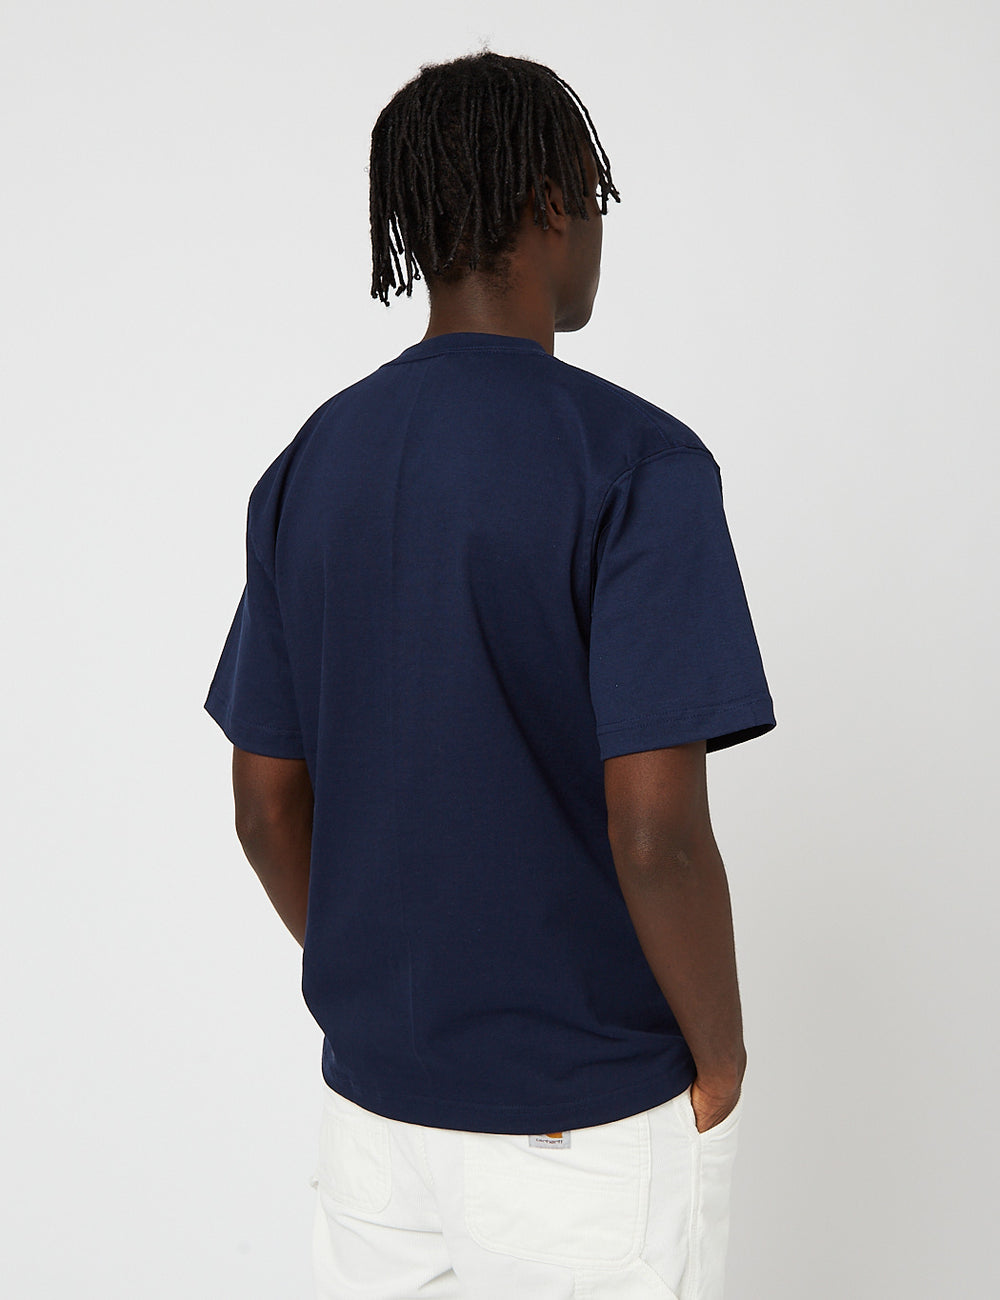 Camber USA 302 Pocket T-Shirt - I Marineblau Cotton) (8oz URBAN EXCESS